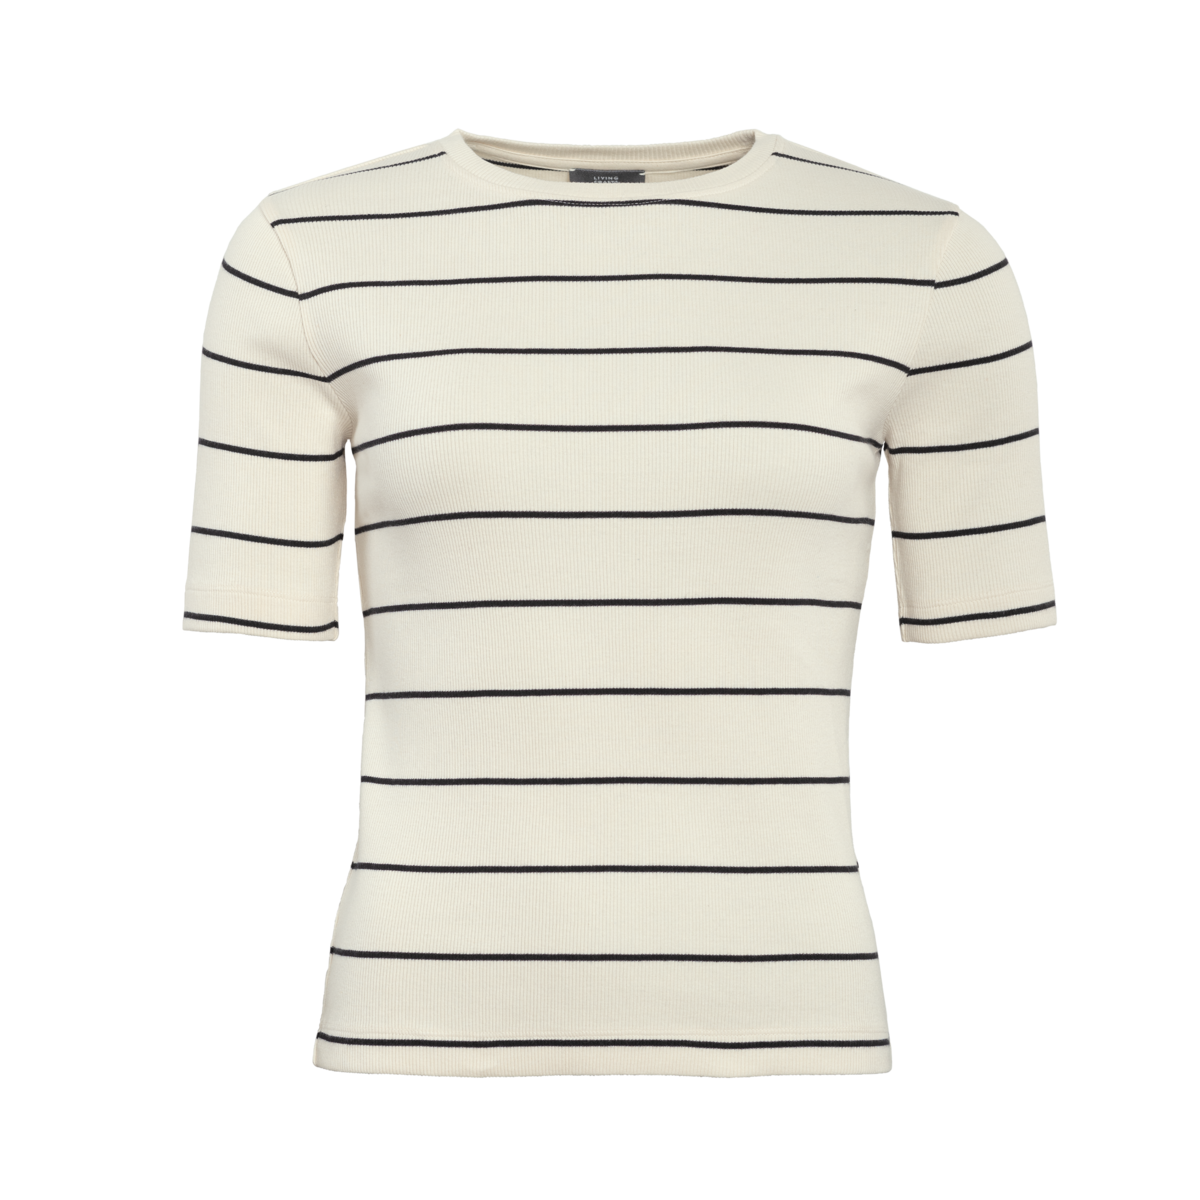 Striped T-shirt, RIA